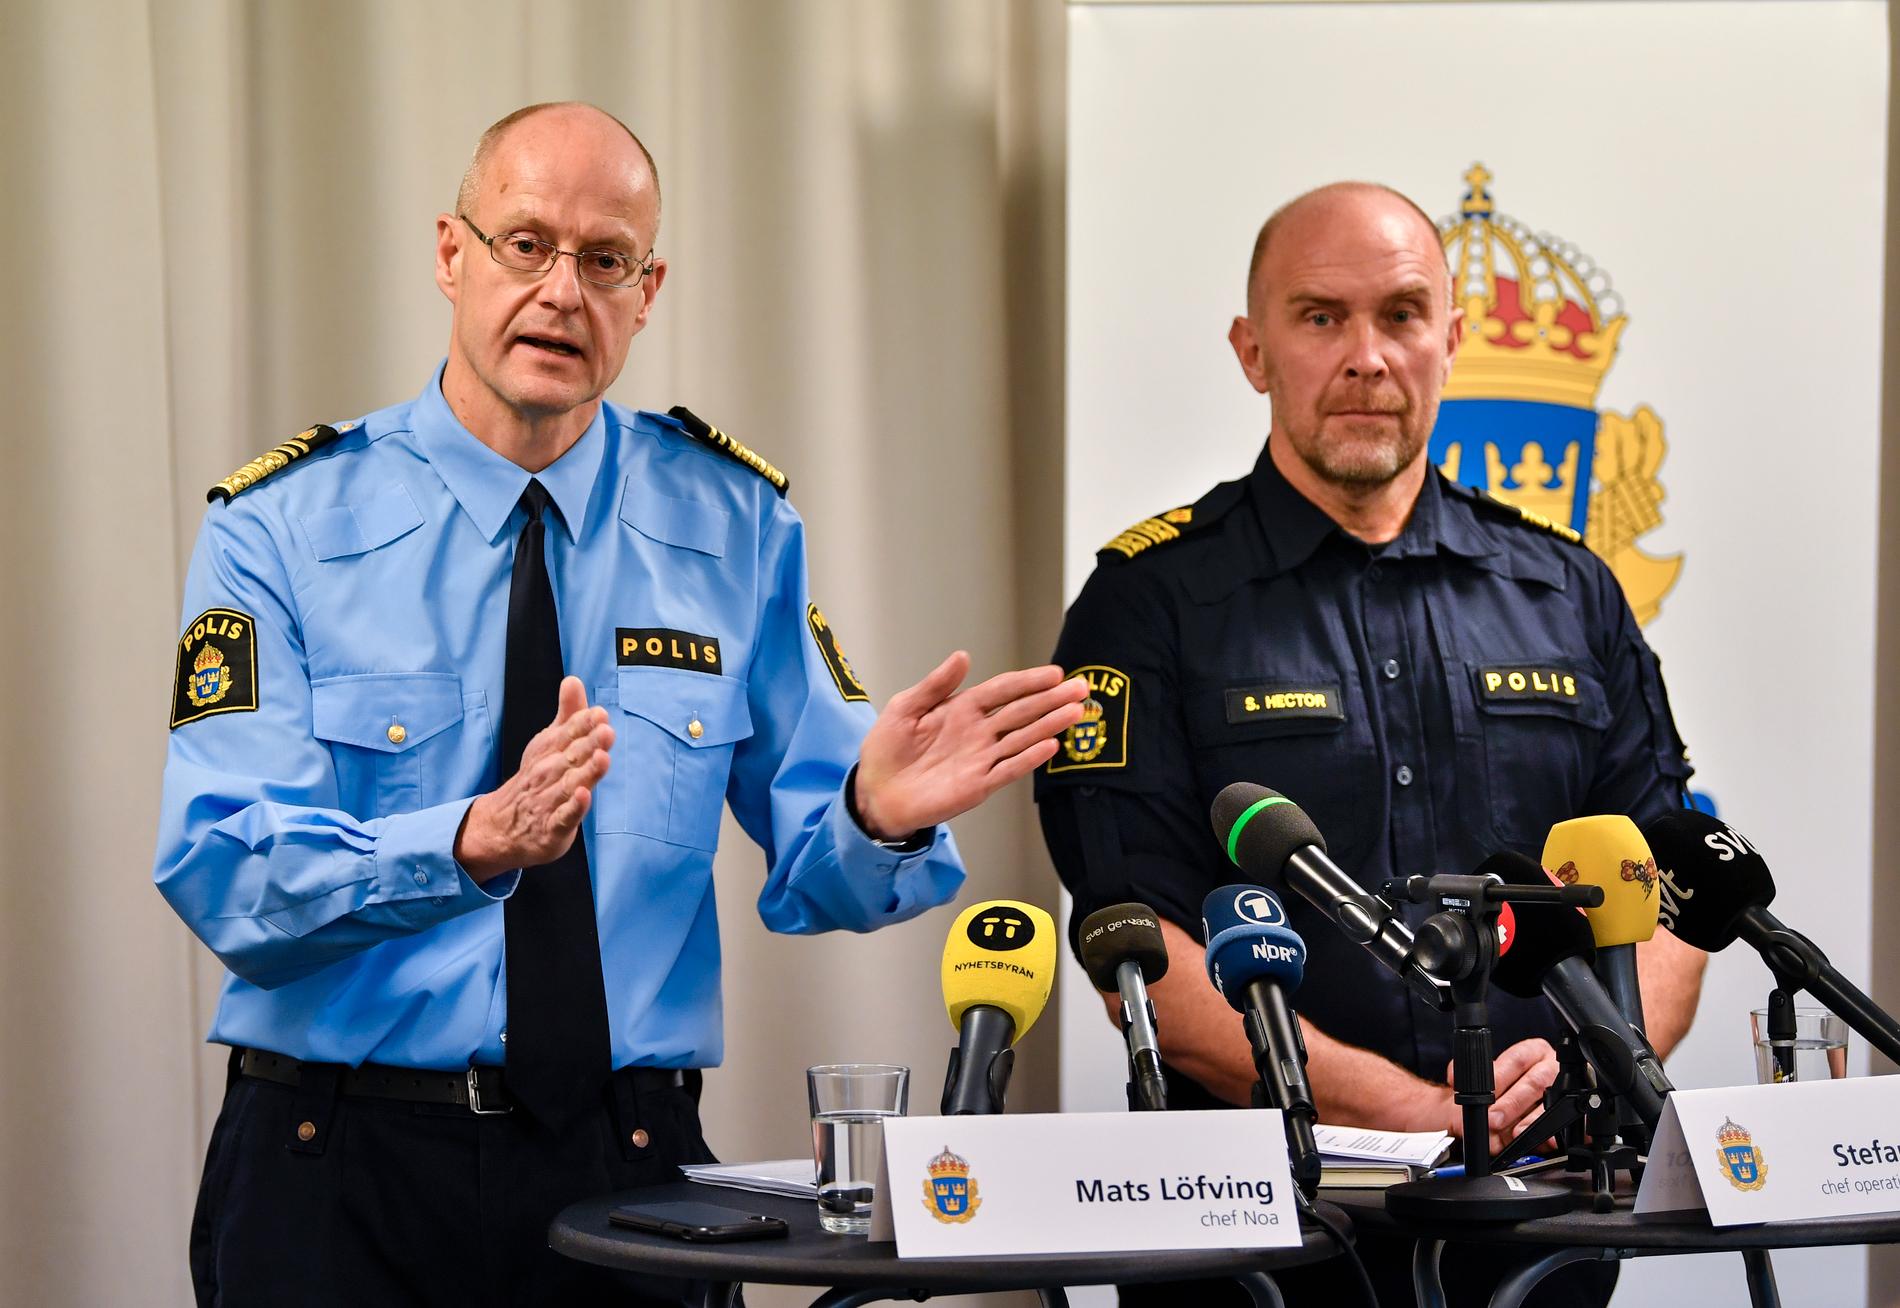 Mats Löfving (chef Noa) och Stefan Hector (chef för operativa enheten vid Noa) under måndagens pressträff om att polisen har inlett en nationell särskild händelse mot organiserad brottslighet.